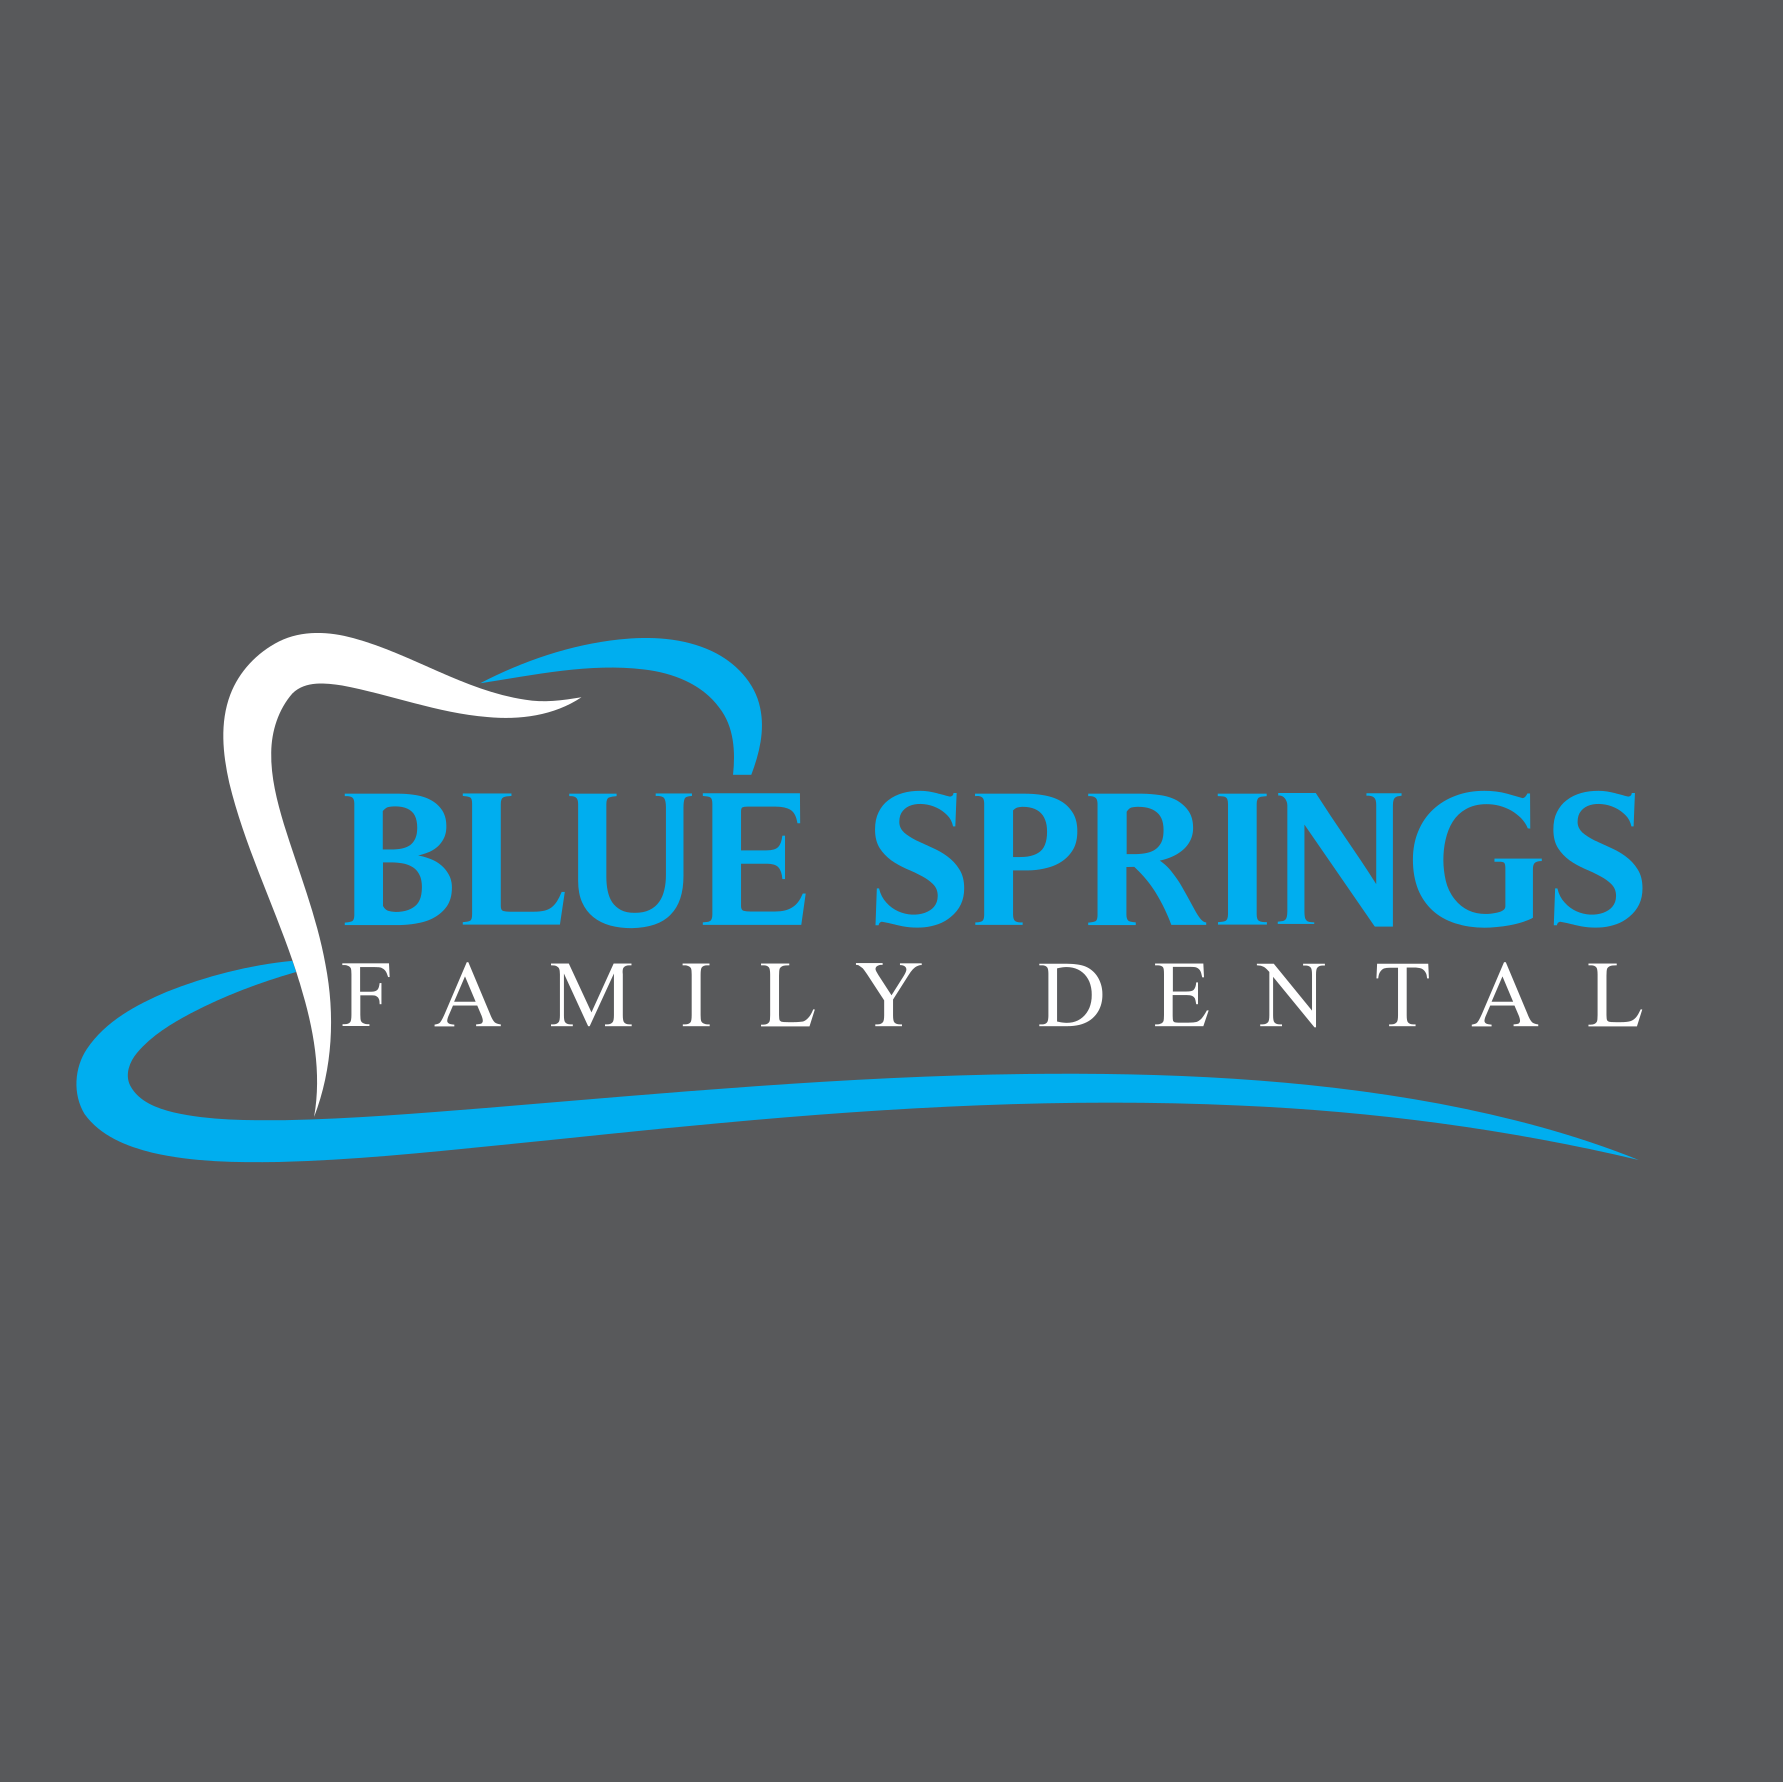 Business logo of Blue Springs Family Dental